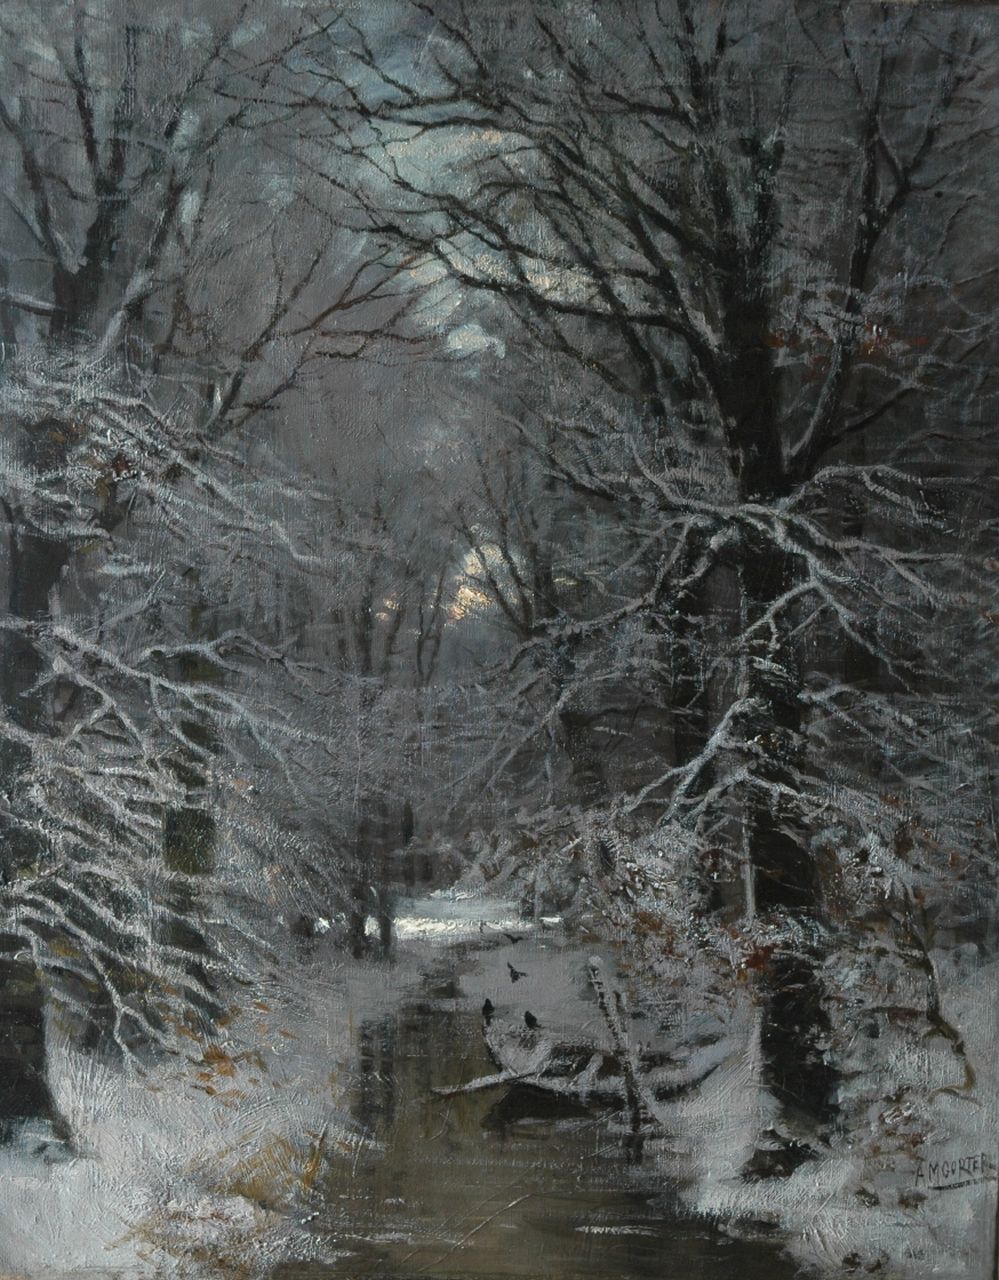 Gorter A.M.  | 'Arnold' Marc Gorter, Bosbeek in de sneeuw, olieverf op doek 76,2 x 60,3 cm, gesigneerd rechtsonder